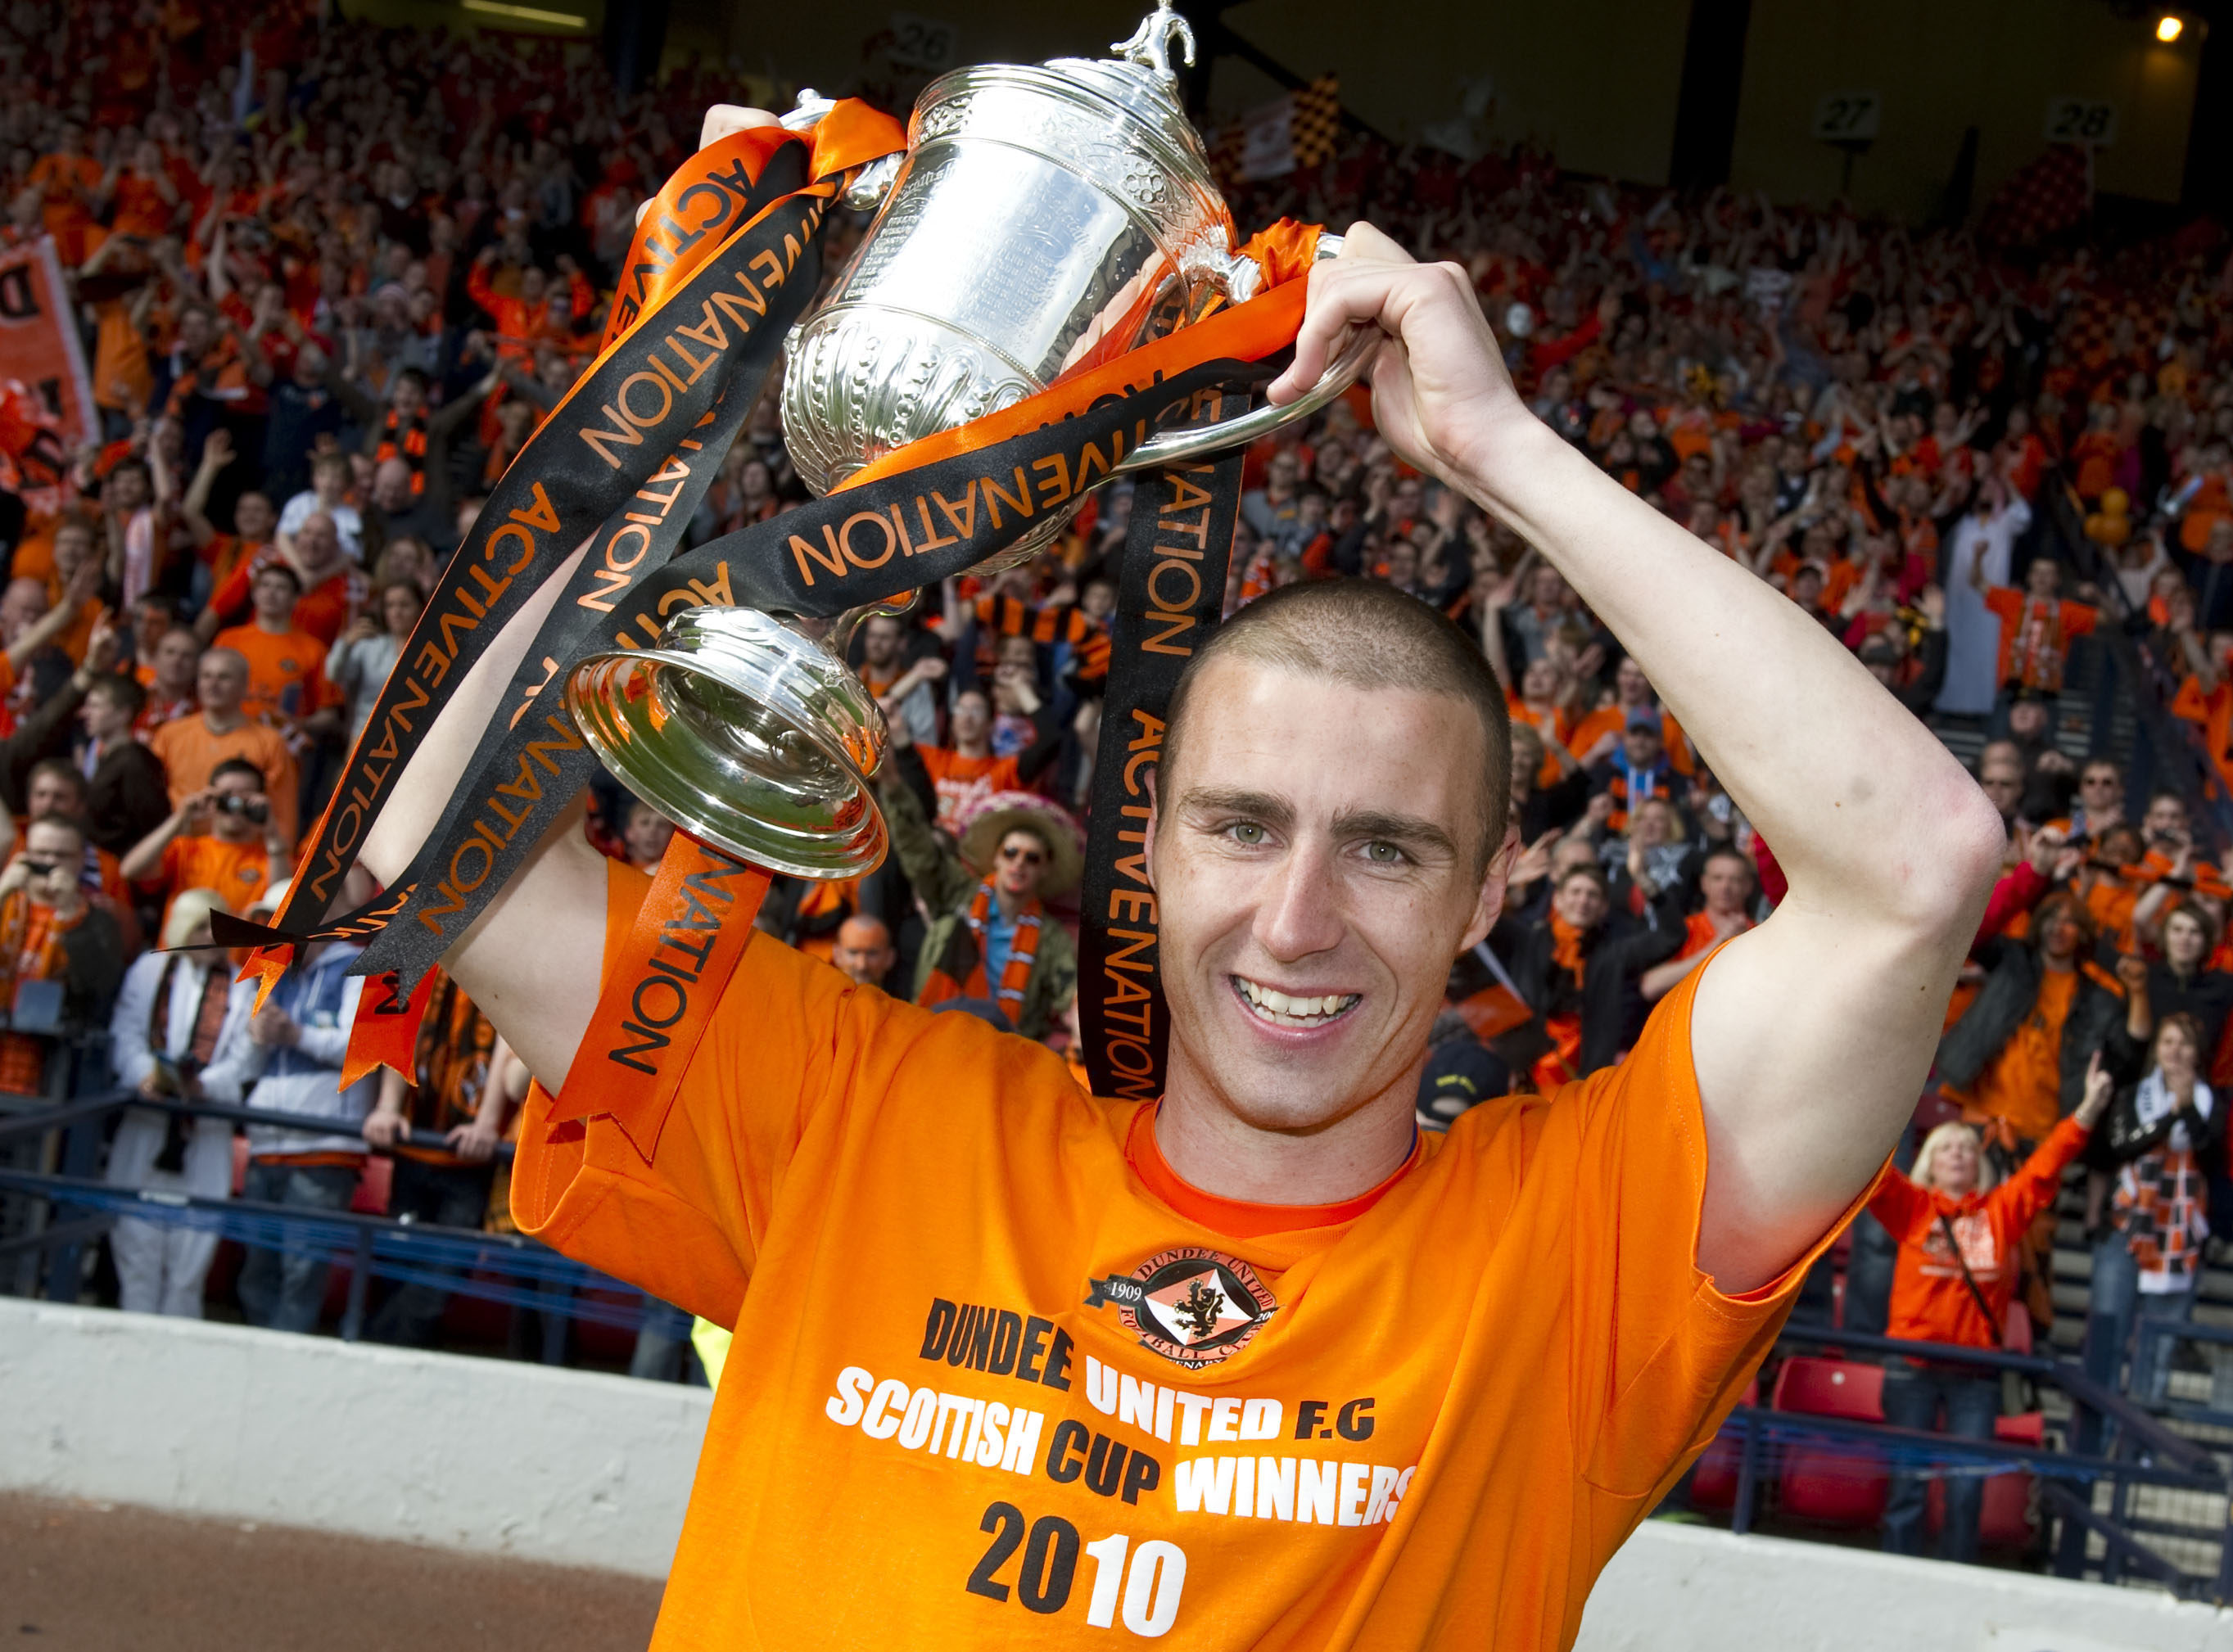 Sean Dillon raises the Scottish Cup in 2010.